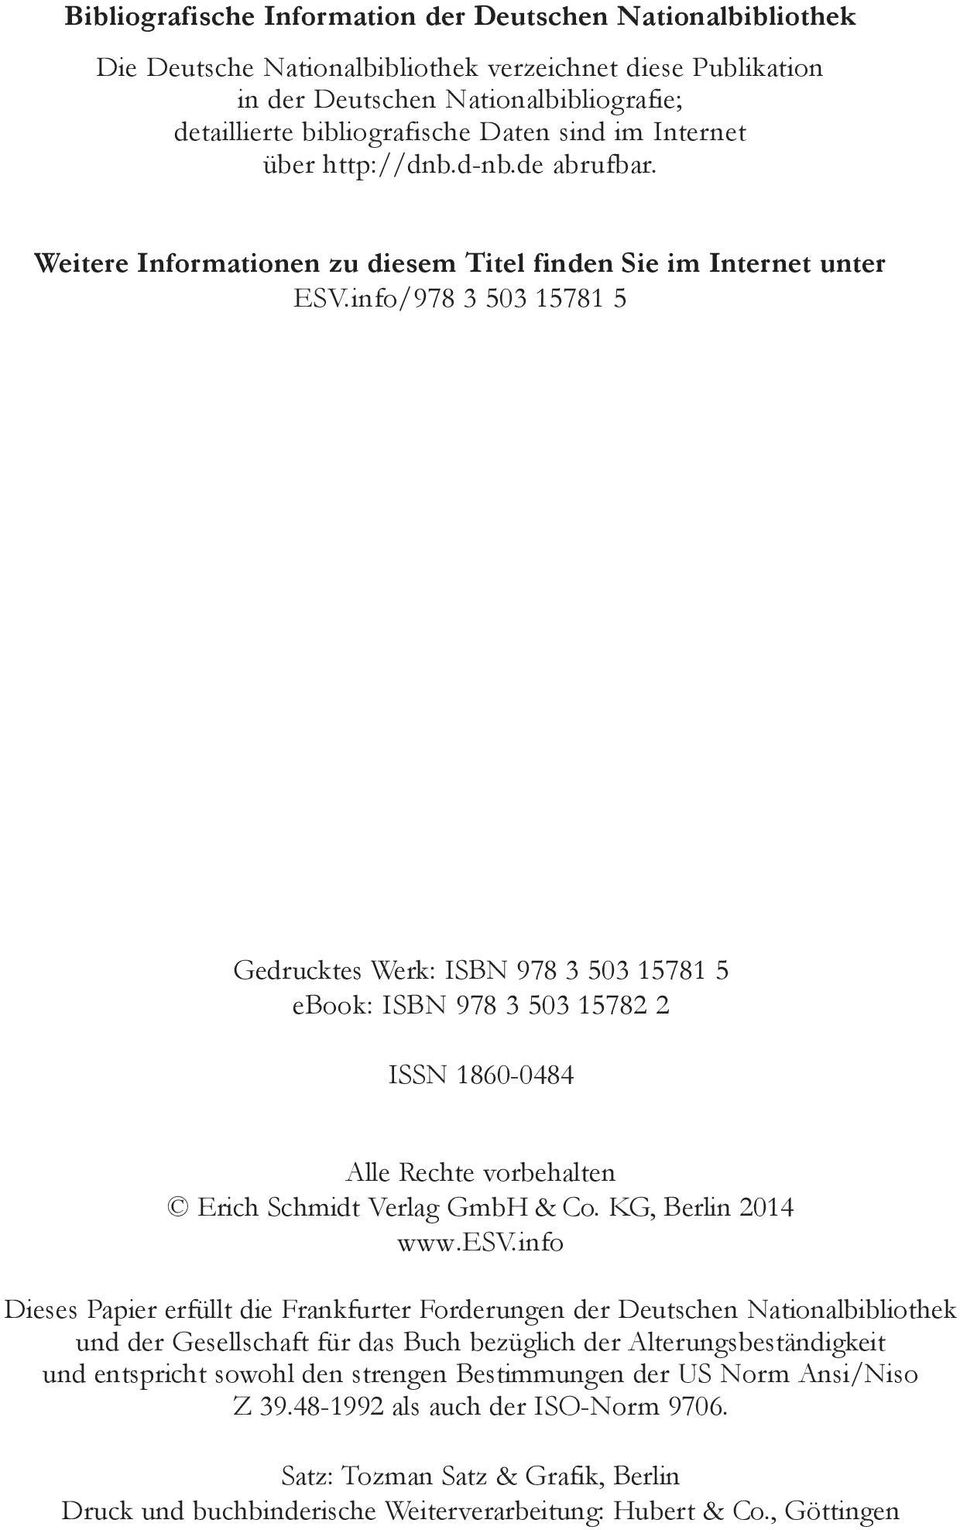 info/978 3 503 15781 5 Gedrucktes Werk: ISBN 978 3 503 15781 5 ebook: ISBN 978 3 503 15782 2 ISSN 1860-0484 Alle Rechte vorbehalten Erich Schmidt Verlag GmbH & Co. KG, Berlin 2014 www.esv.